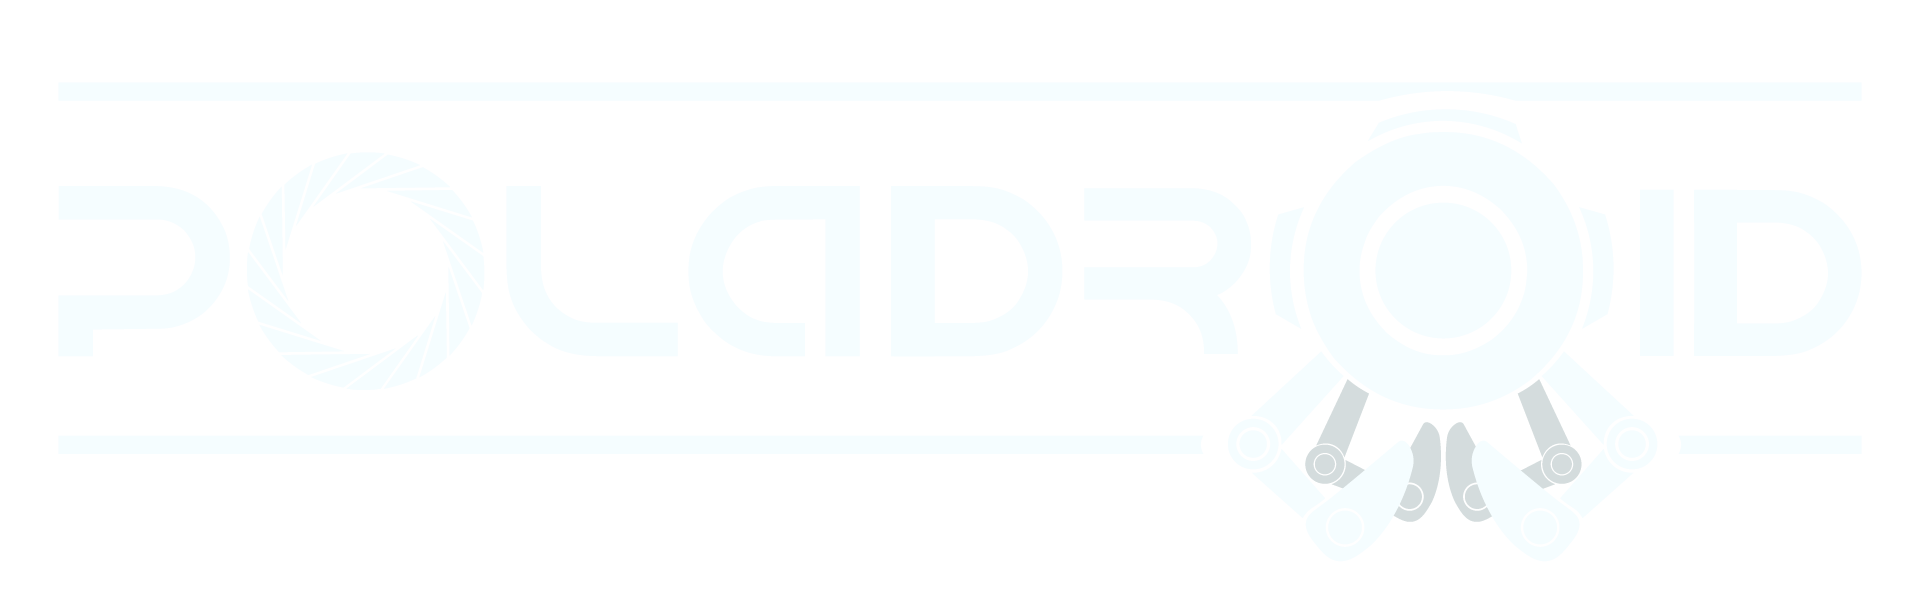 Poladroid_Logo_Title